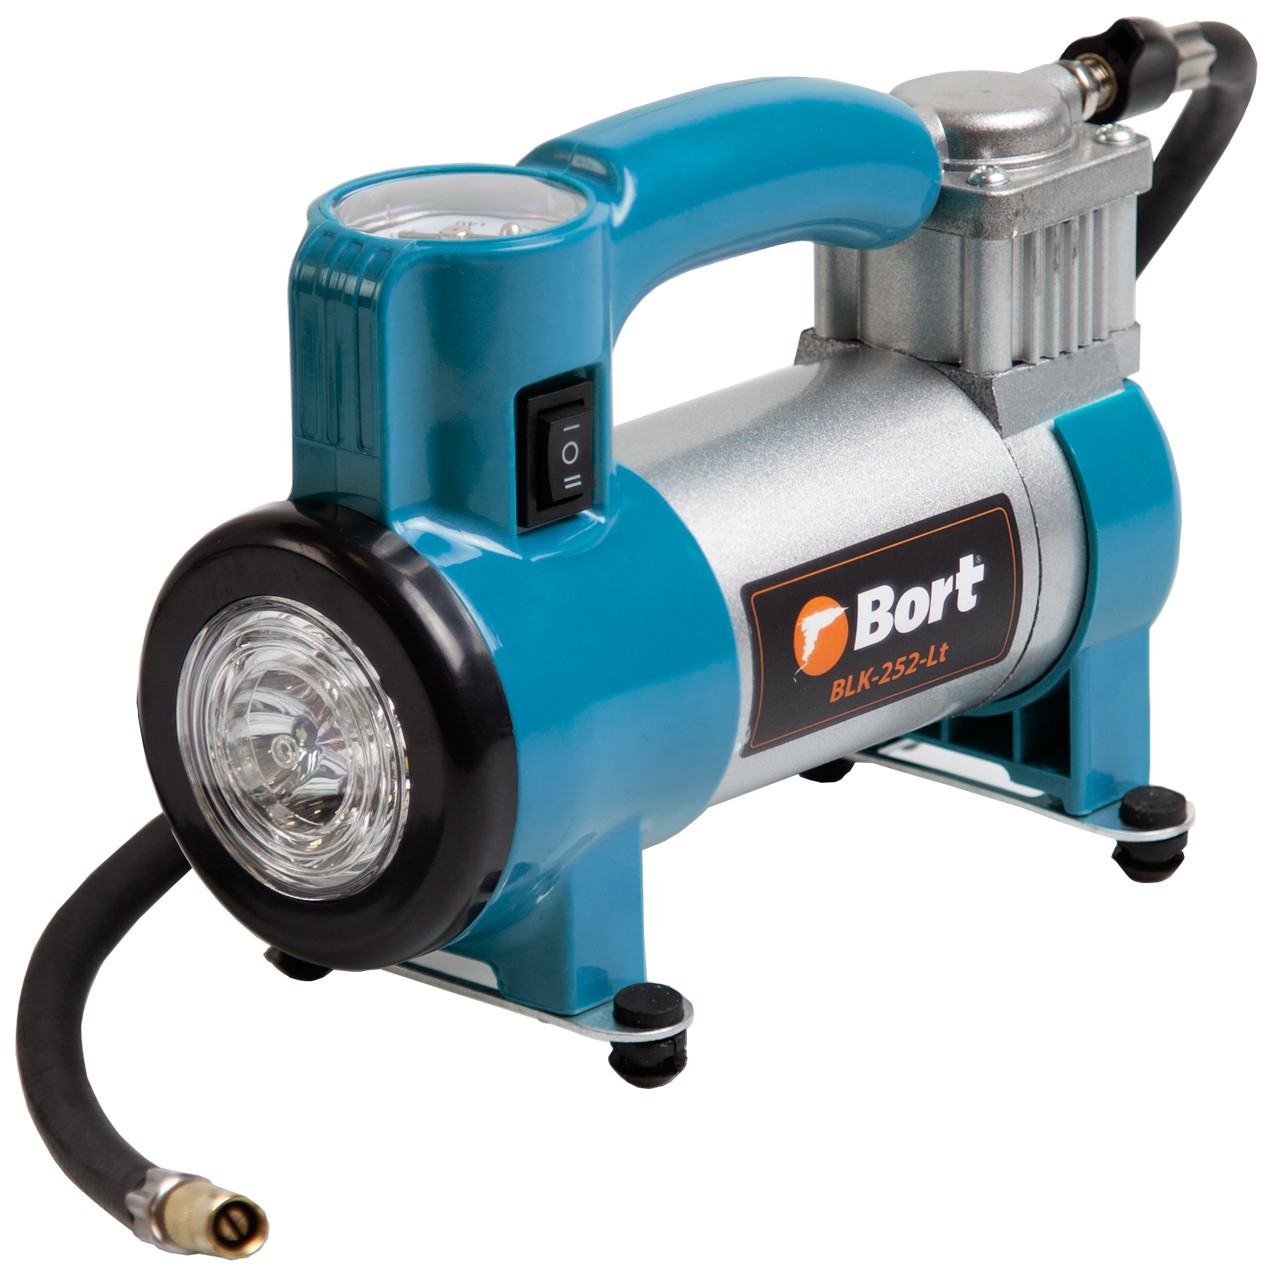 Автомобильный компрессор Bort BLK-252-LT (91271099) (7 атм, 25 л/мин, фонарь)